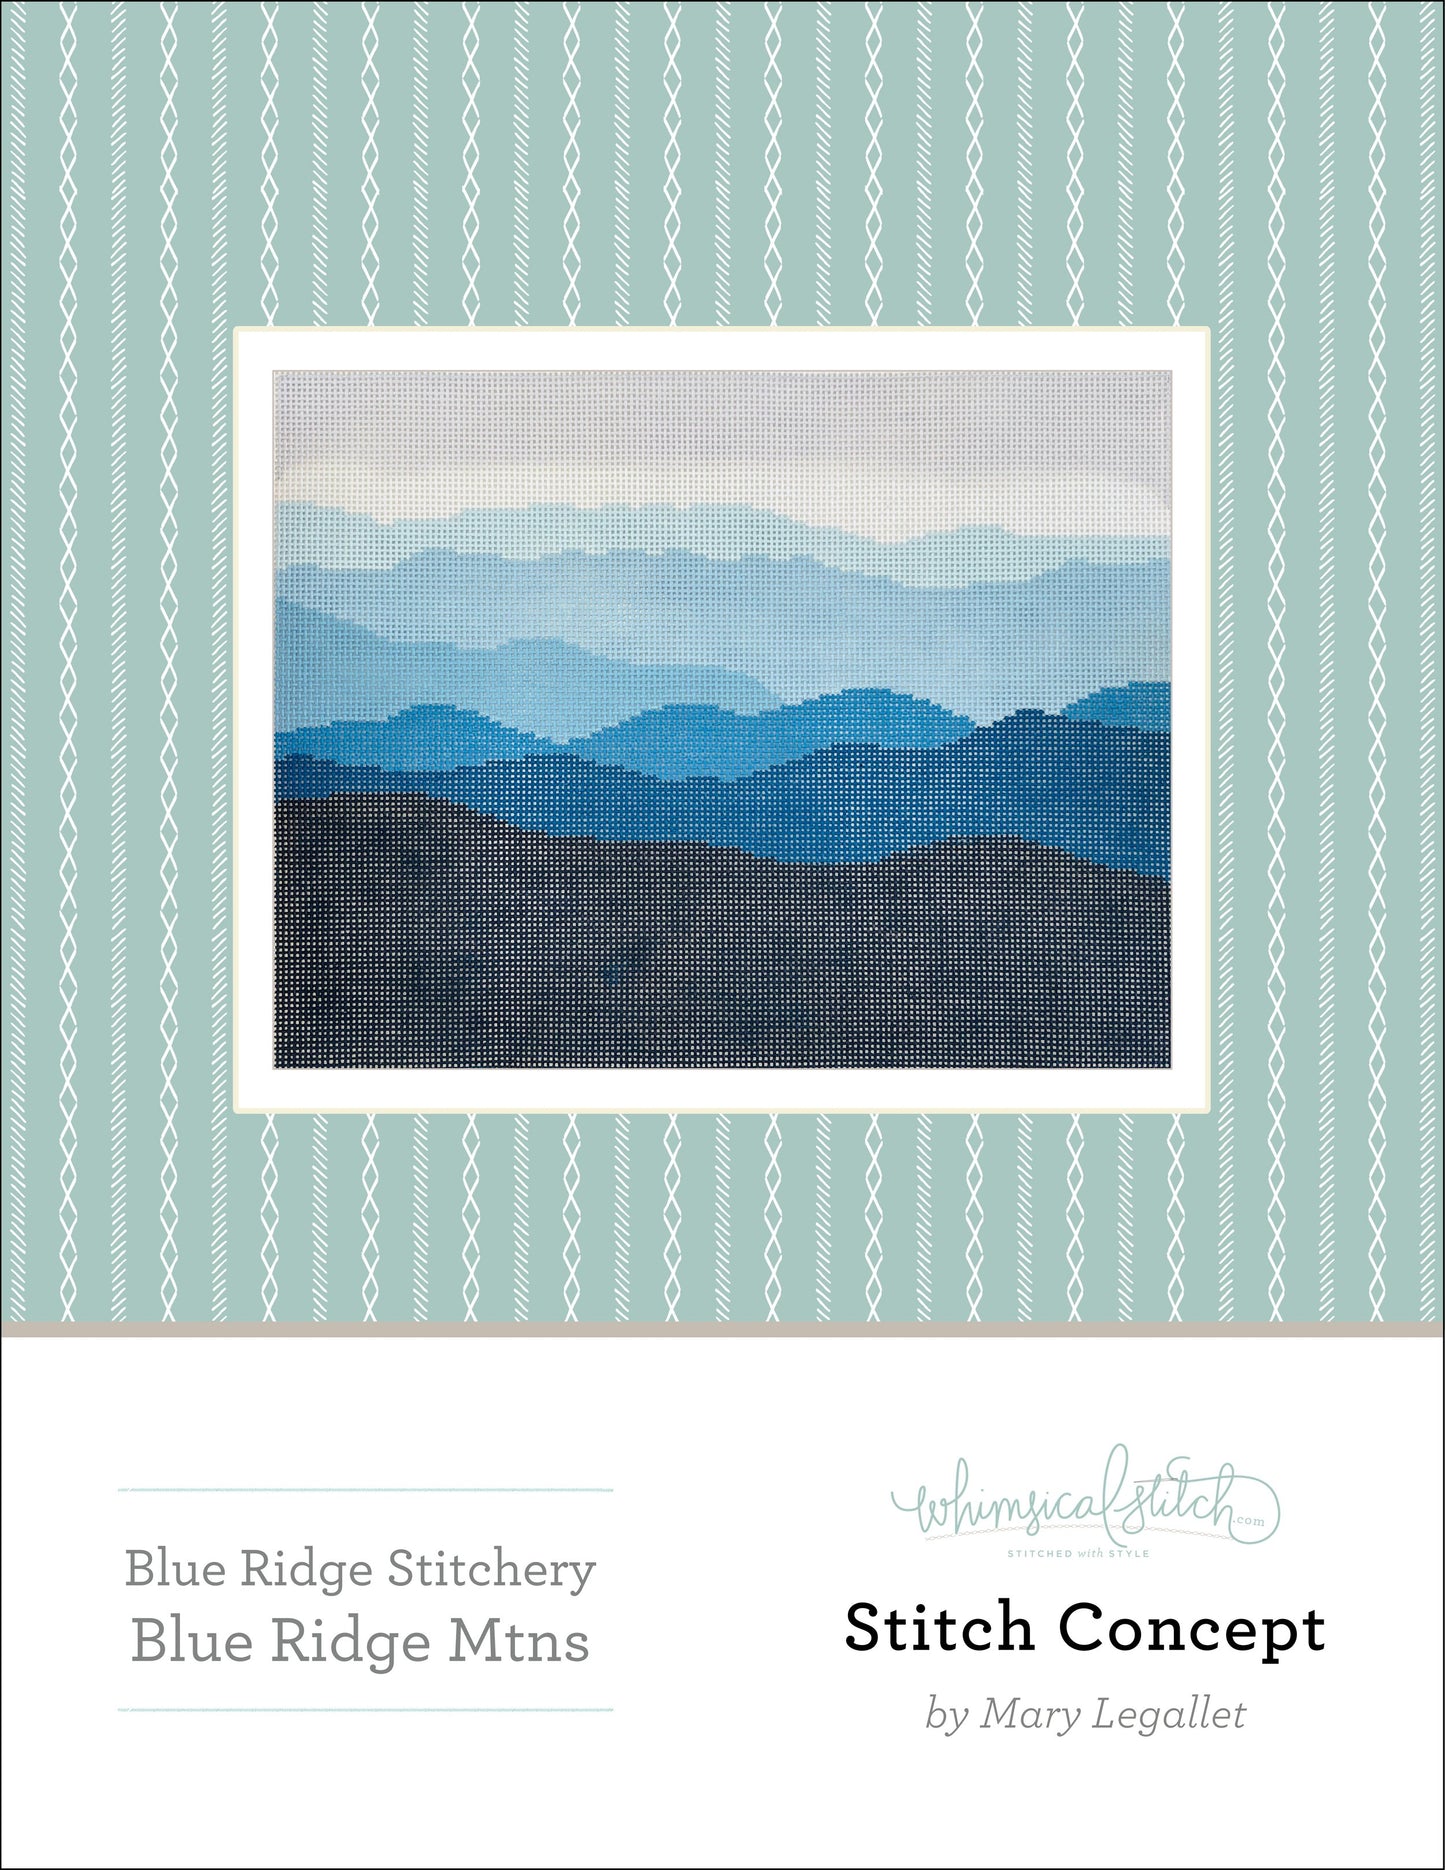 Blue Ridge Mountains - large - Stitch Concept